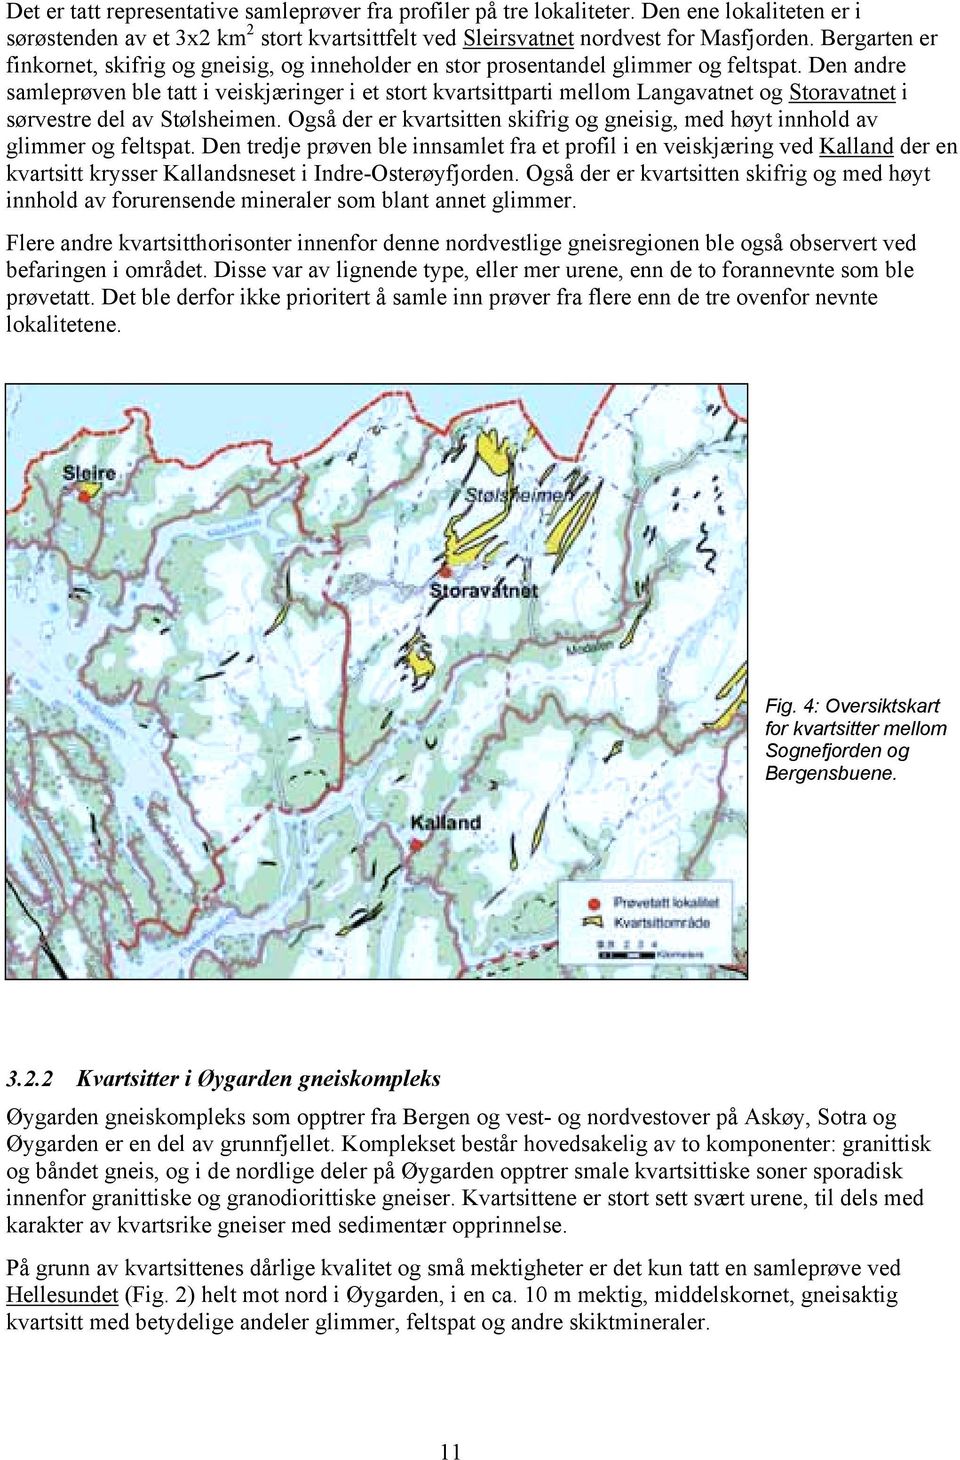 Den andre samleprøven ble tatt i veiskjæringer i et stort kvartsittparti mellom Langavatnet og Storavatnet i sørvestre del av Stølsheimen.